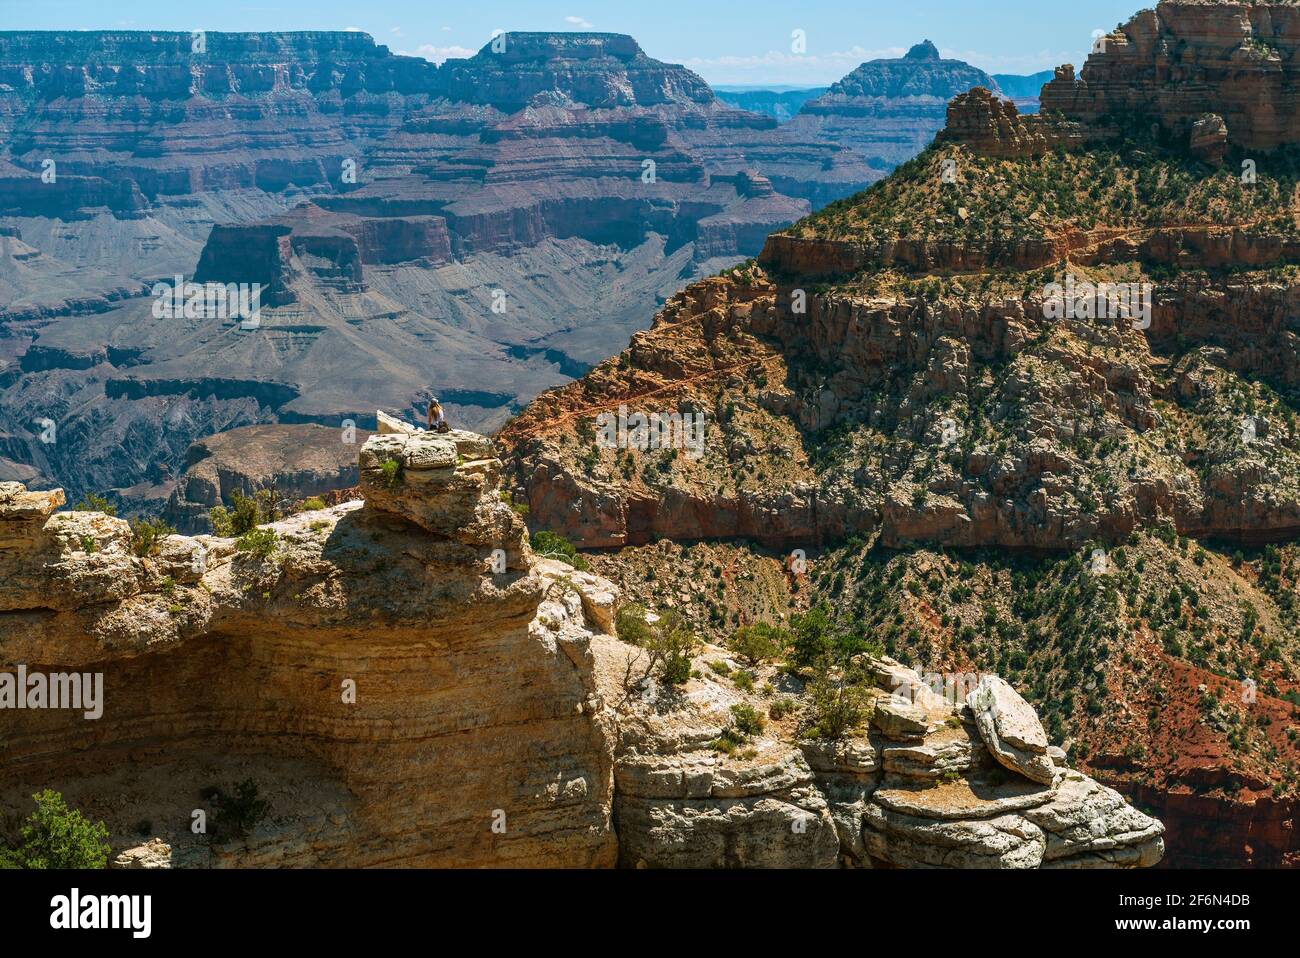 Turista femminile su una roccia che guarda sull'Infinito del Grand Canyon, Arizona, Stati Uniti d'America (USA). Foto Stock